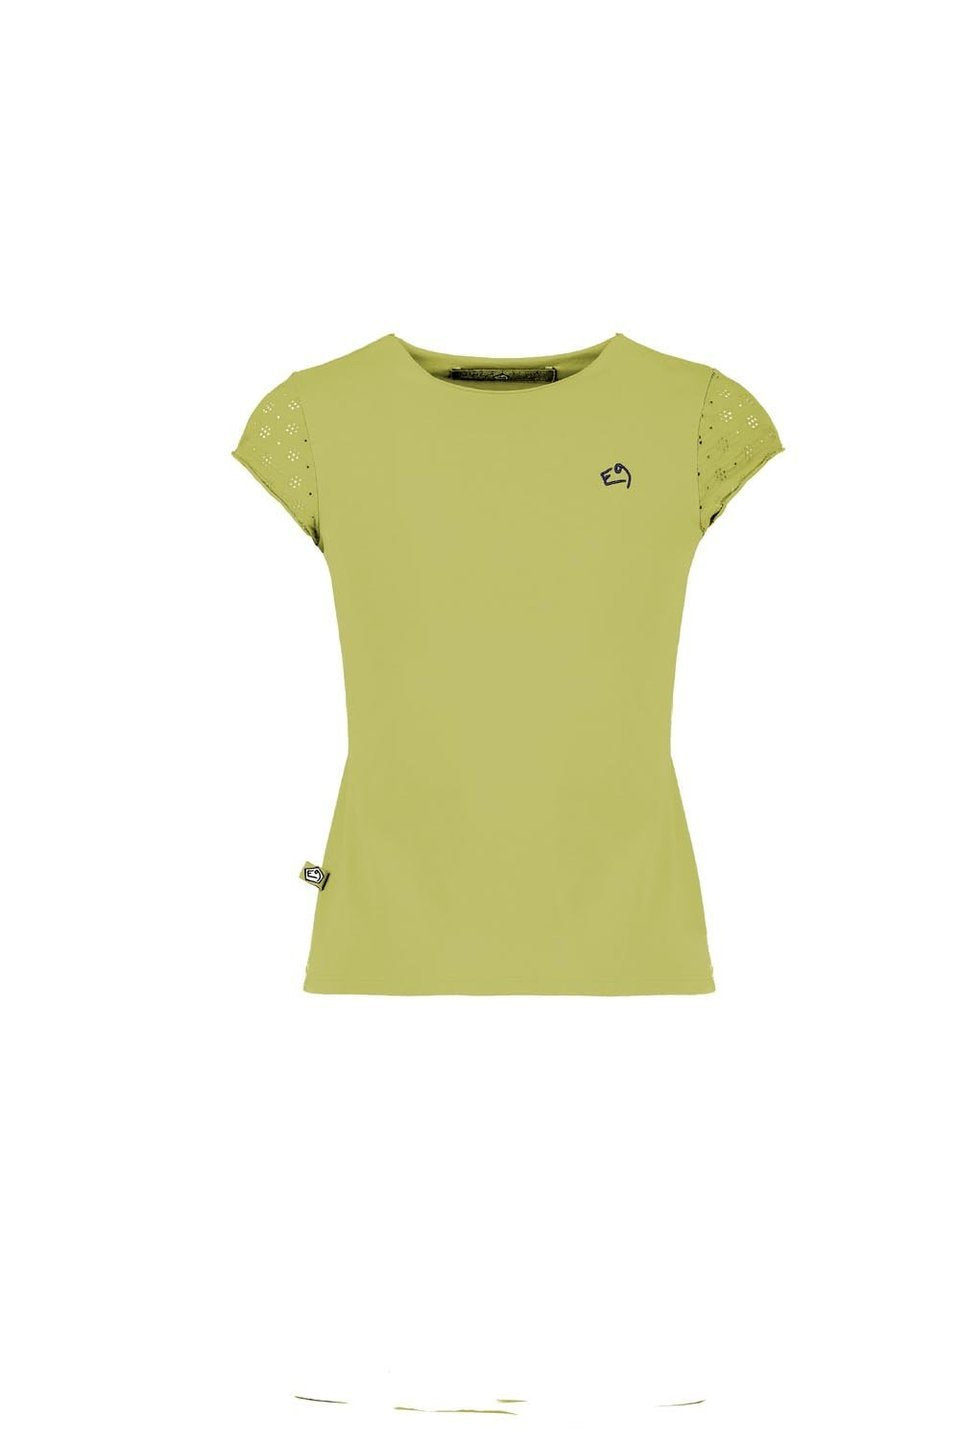 E9 Enove B Rica - T-shirt bambina in cotone bi-stretch con scollatura a taglio vivo e caratterizzata dalla grafica originale APPLE